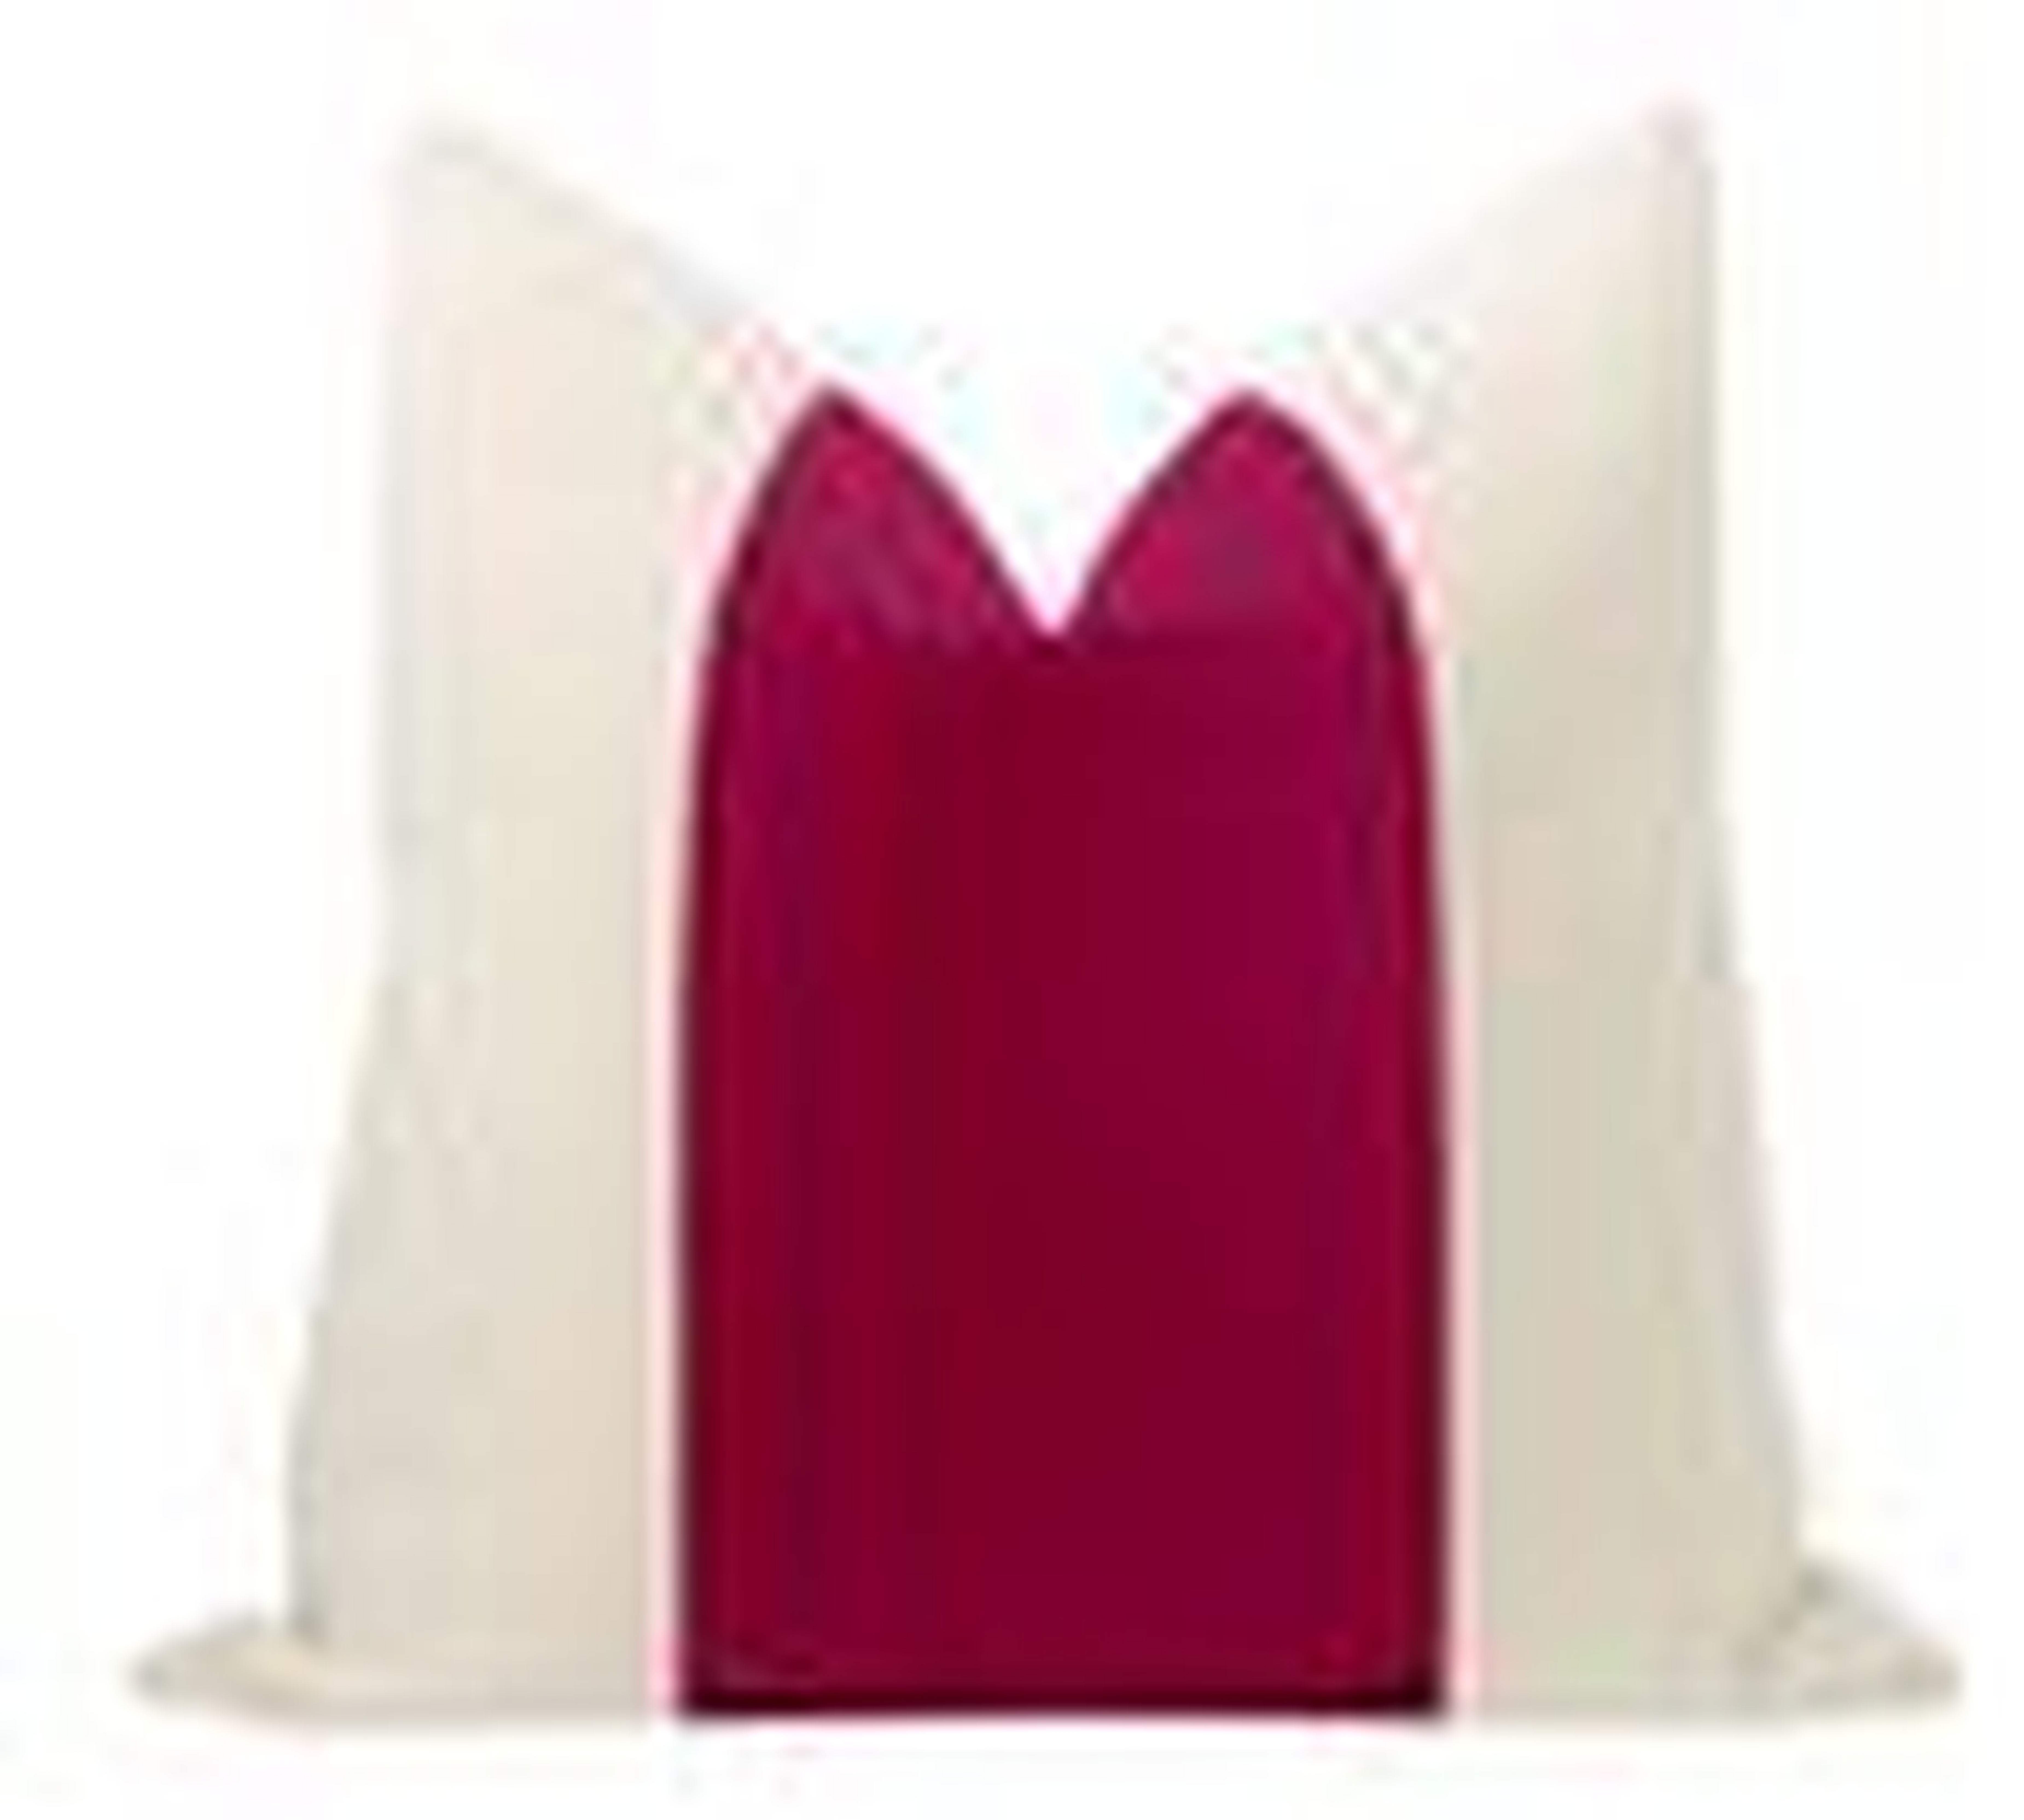 Panel Studio Velvet Pillow Cover, Magenta, 12" x 18" - Little Design Company